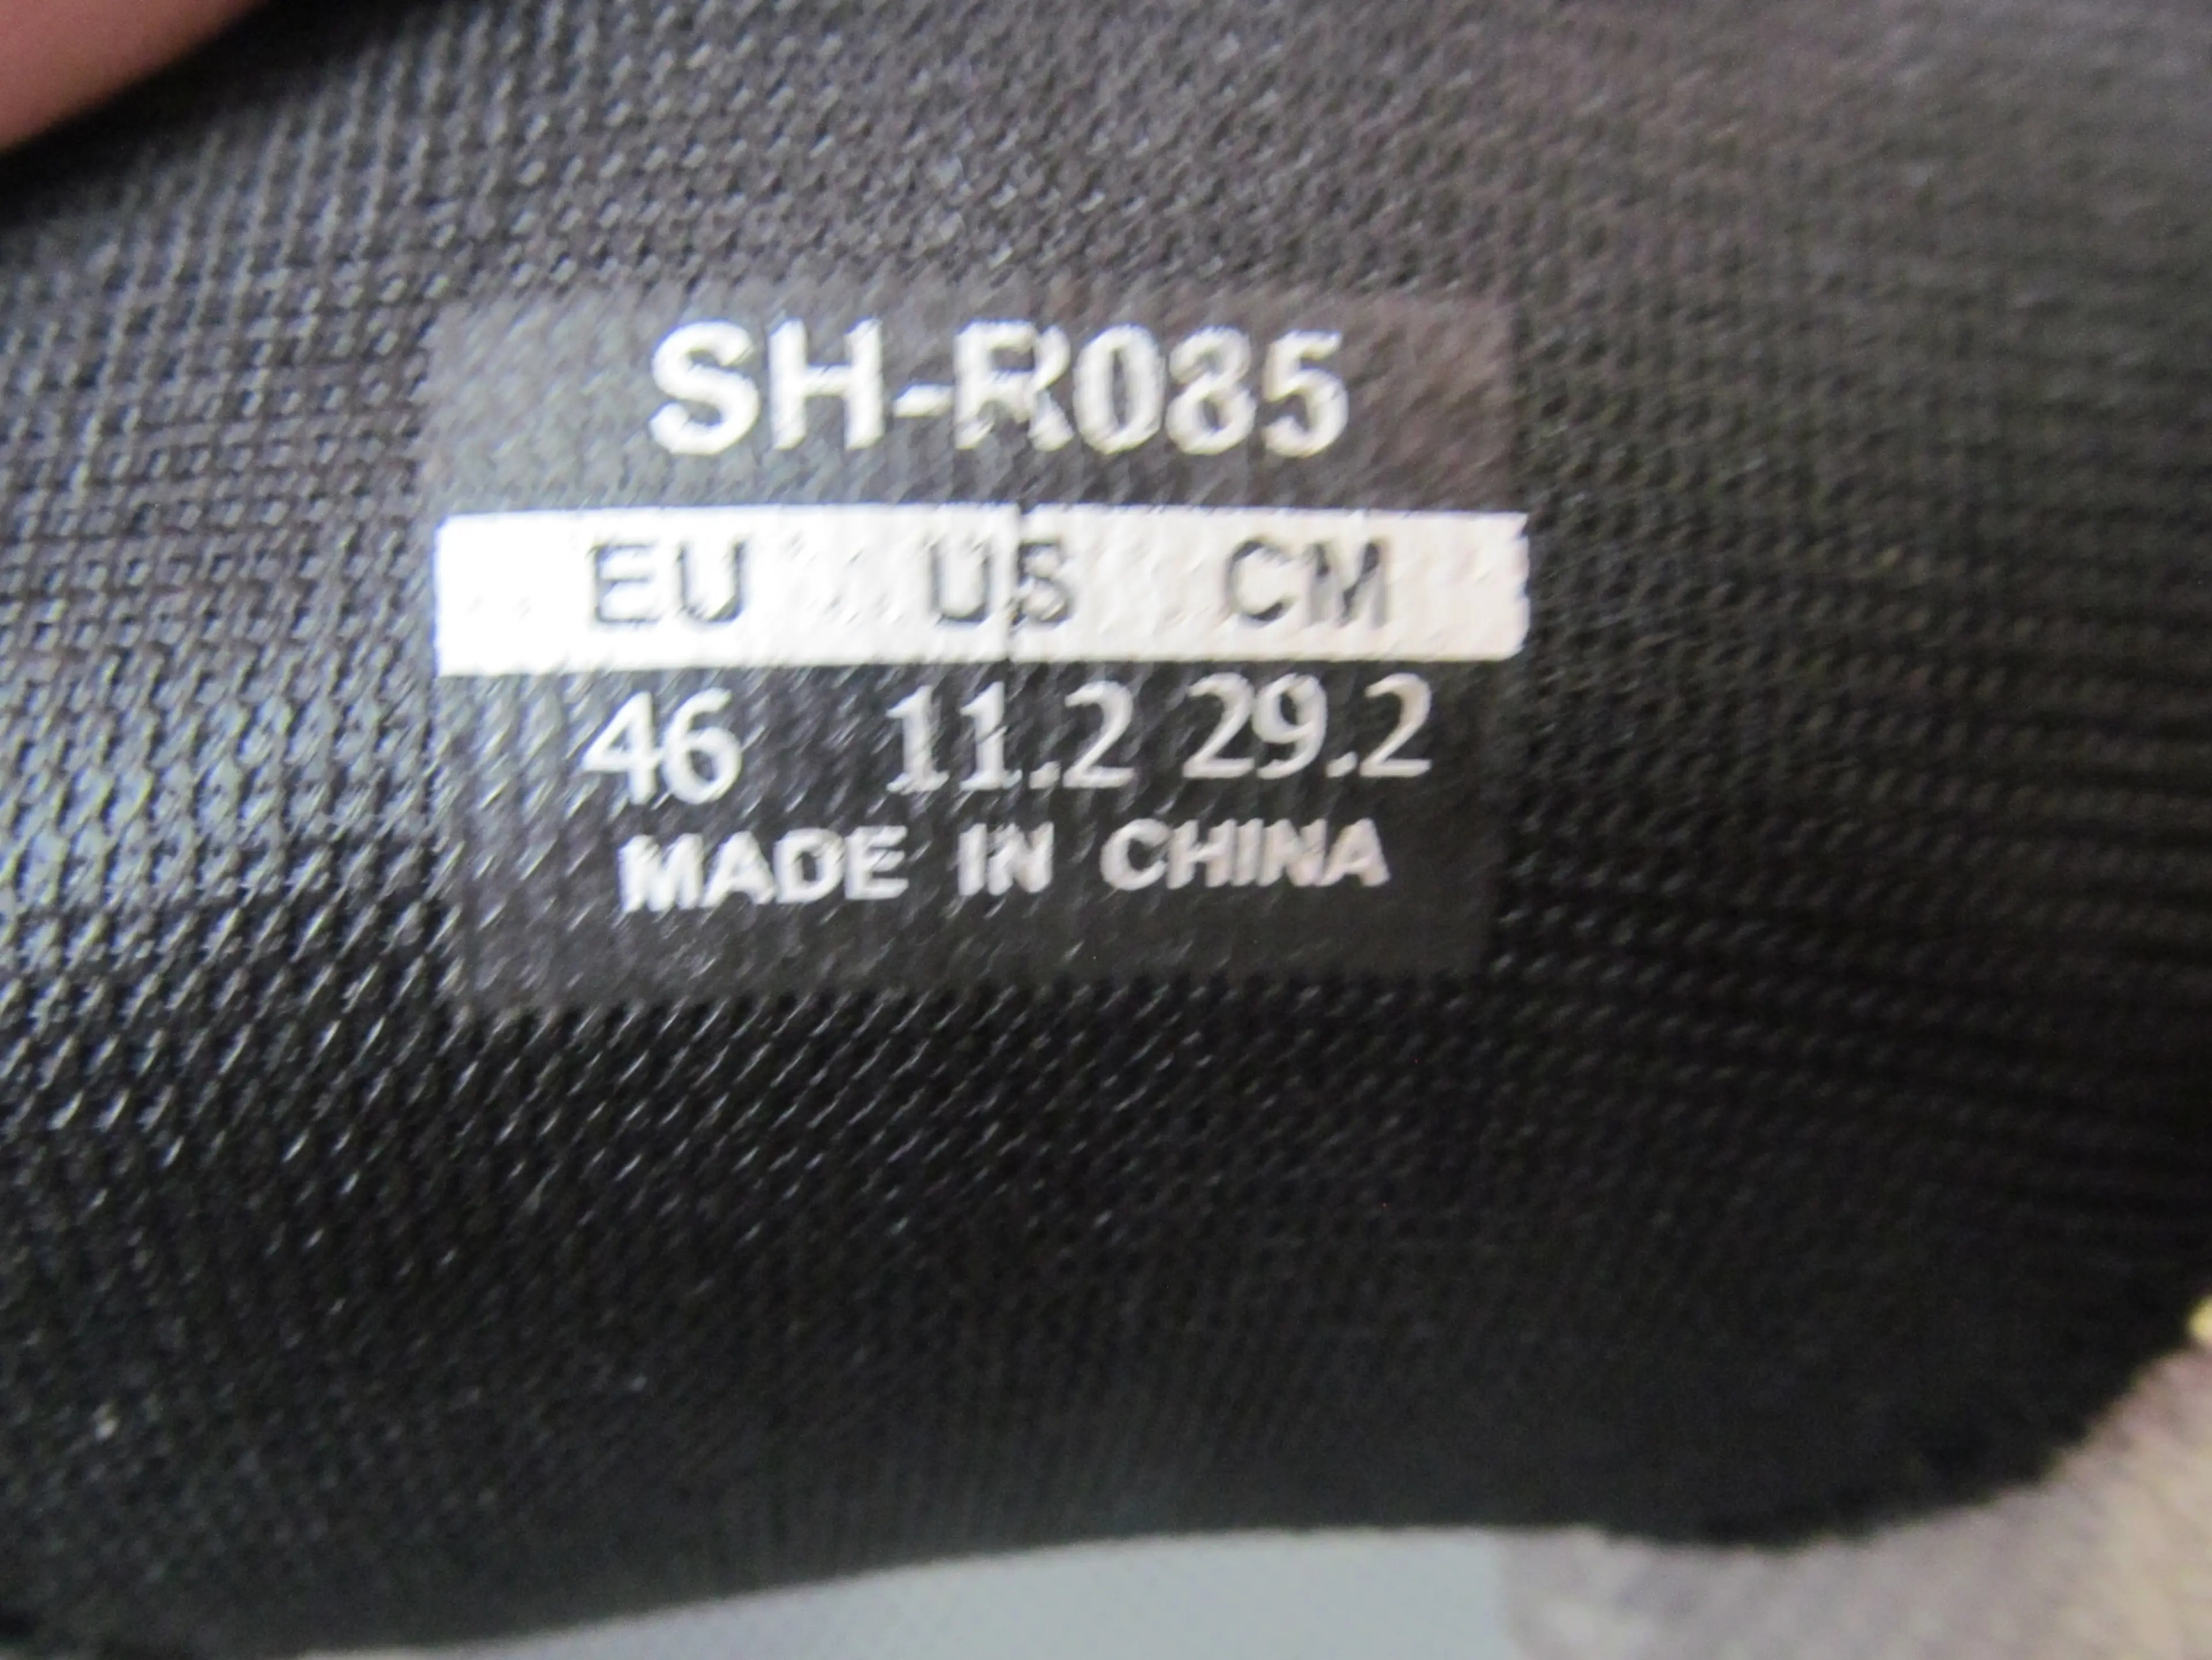 3. Pantofi Shimano SH-R085, nr 46, 29.2